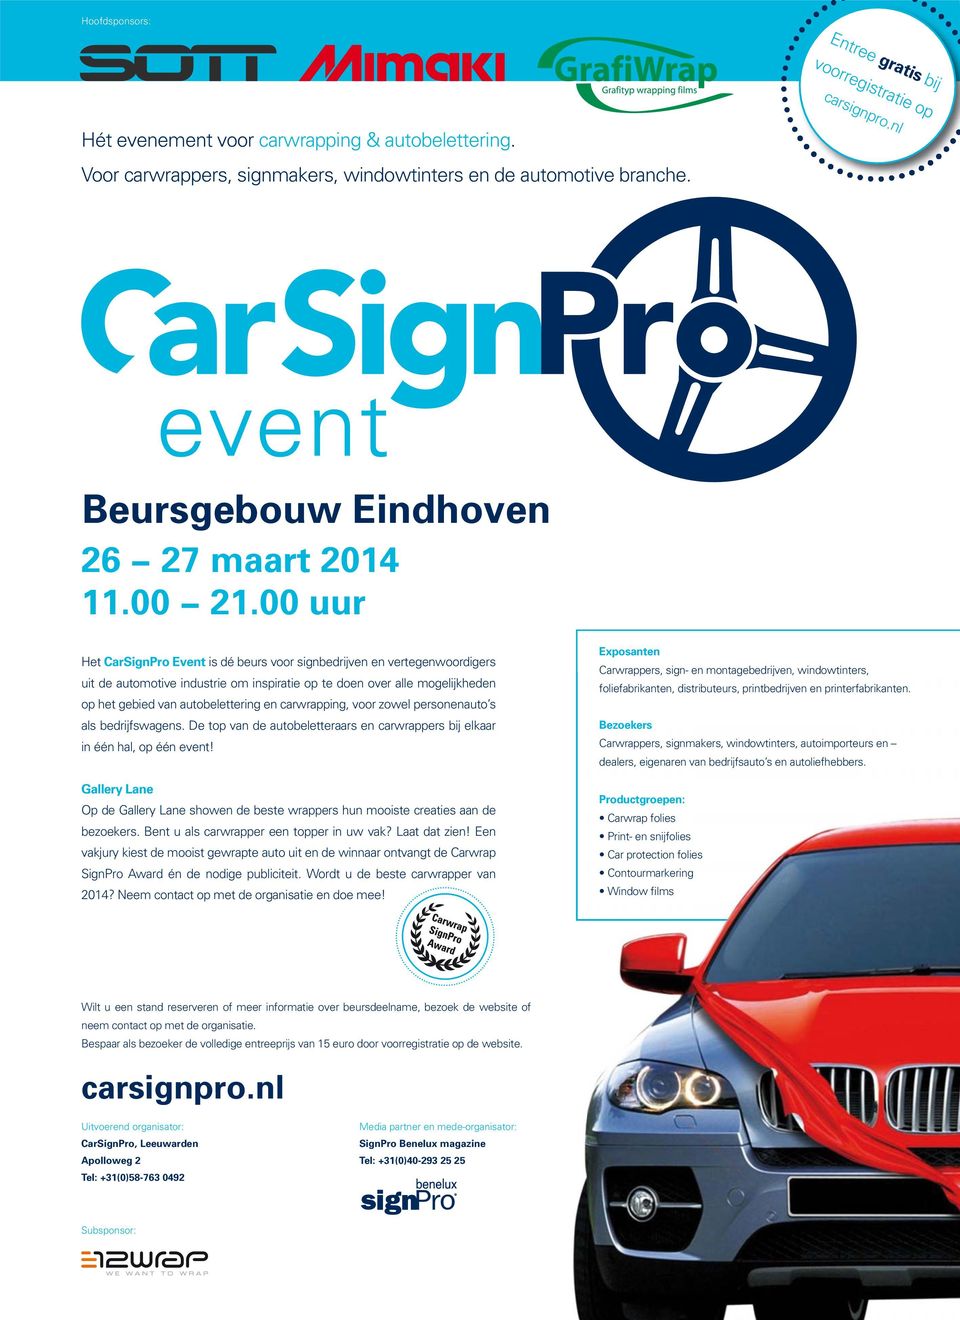 00 uur Het CarSignPro Event is dé beurs voor signbedrijven en vertegenwoordigers uit de automotive industrie om inspiratie op te doen over alle mogelijkheden op het gebied van autobelettering en